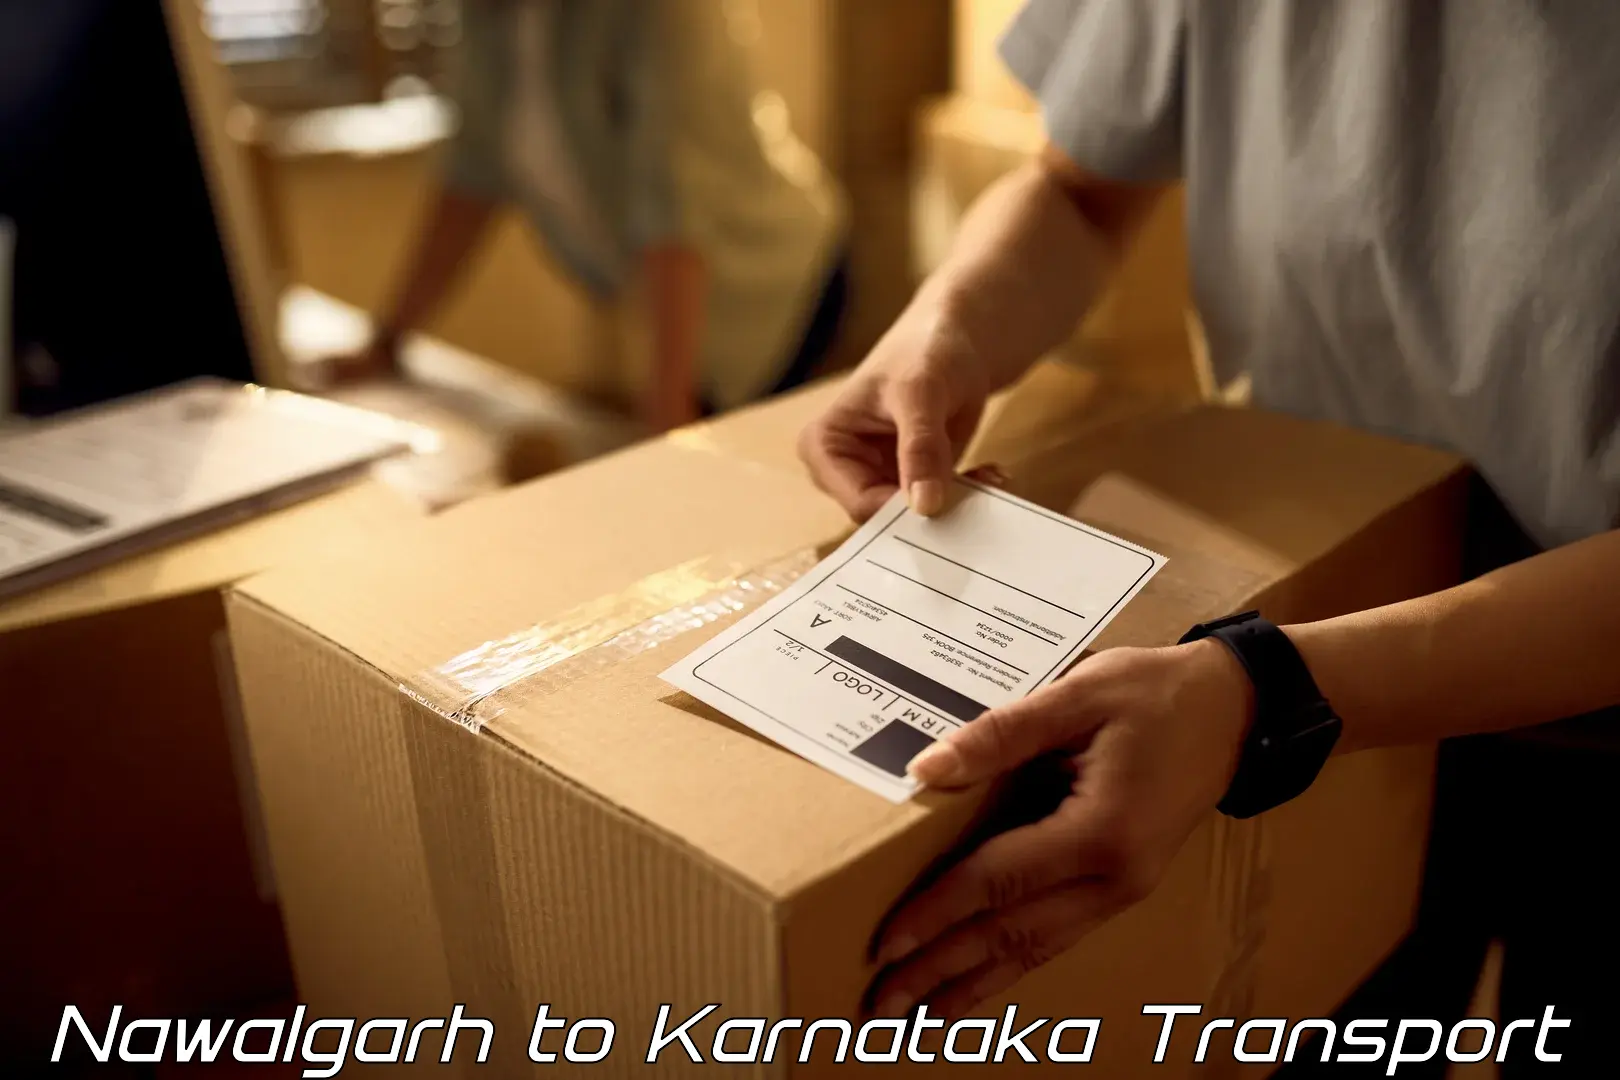 Two wheeler parcel service Nawalgarh to Bhatkal